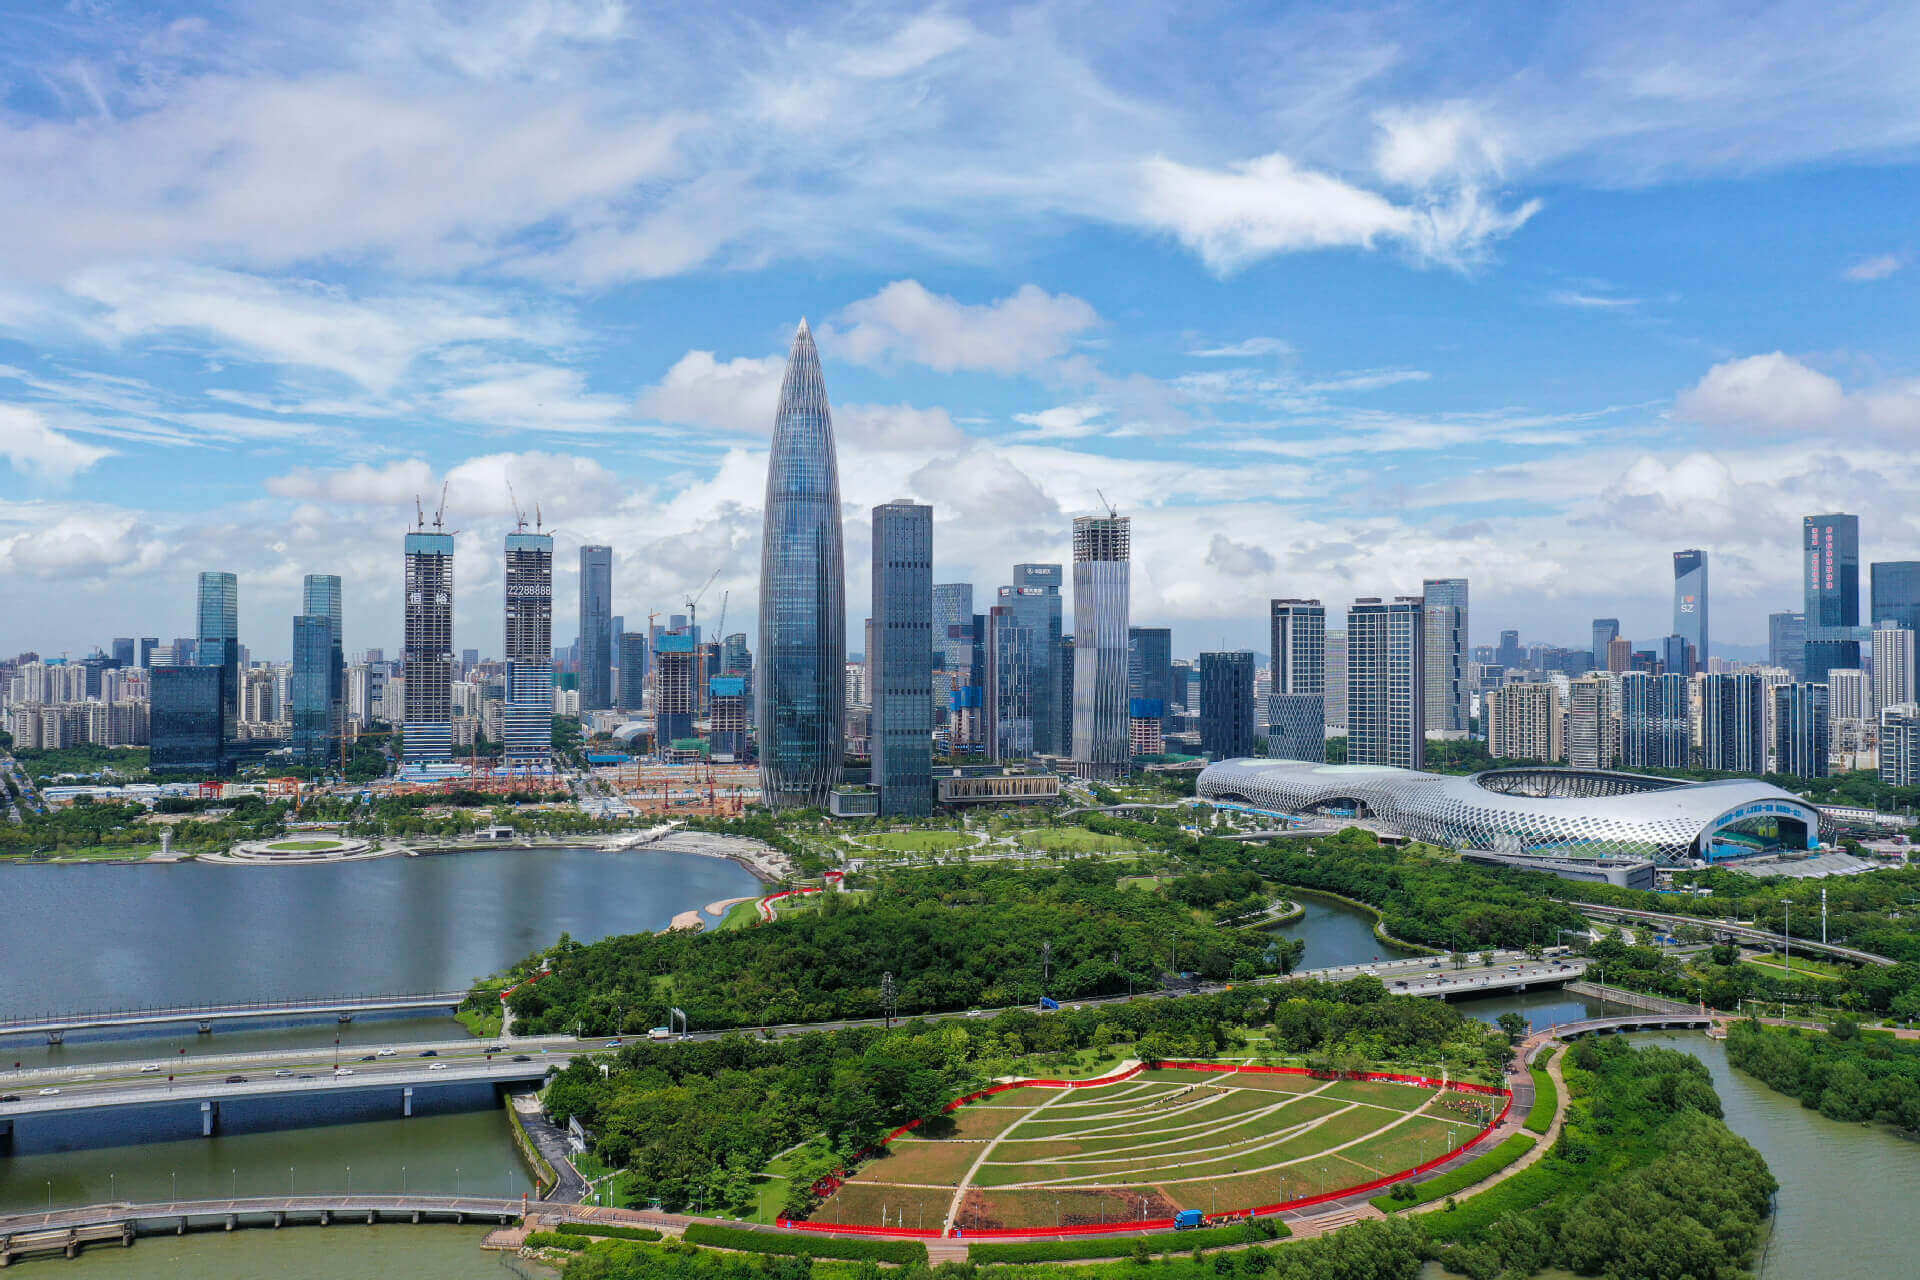 Plan unveiled for Shenzhen